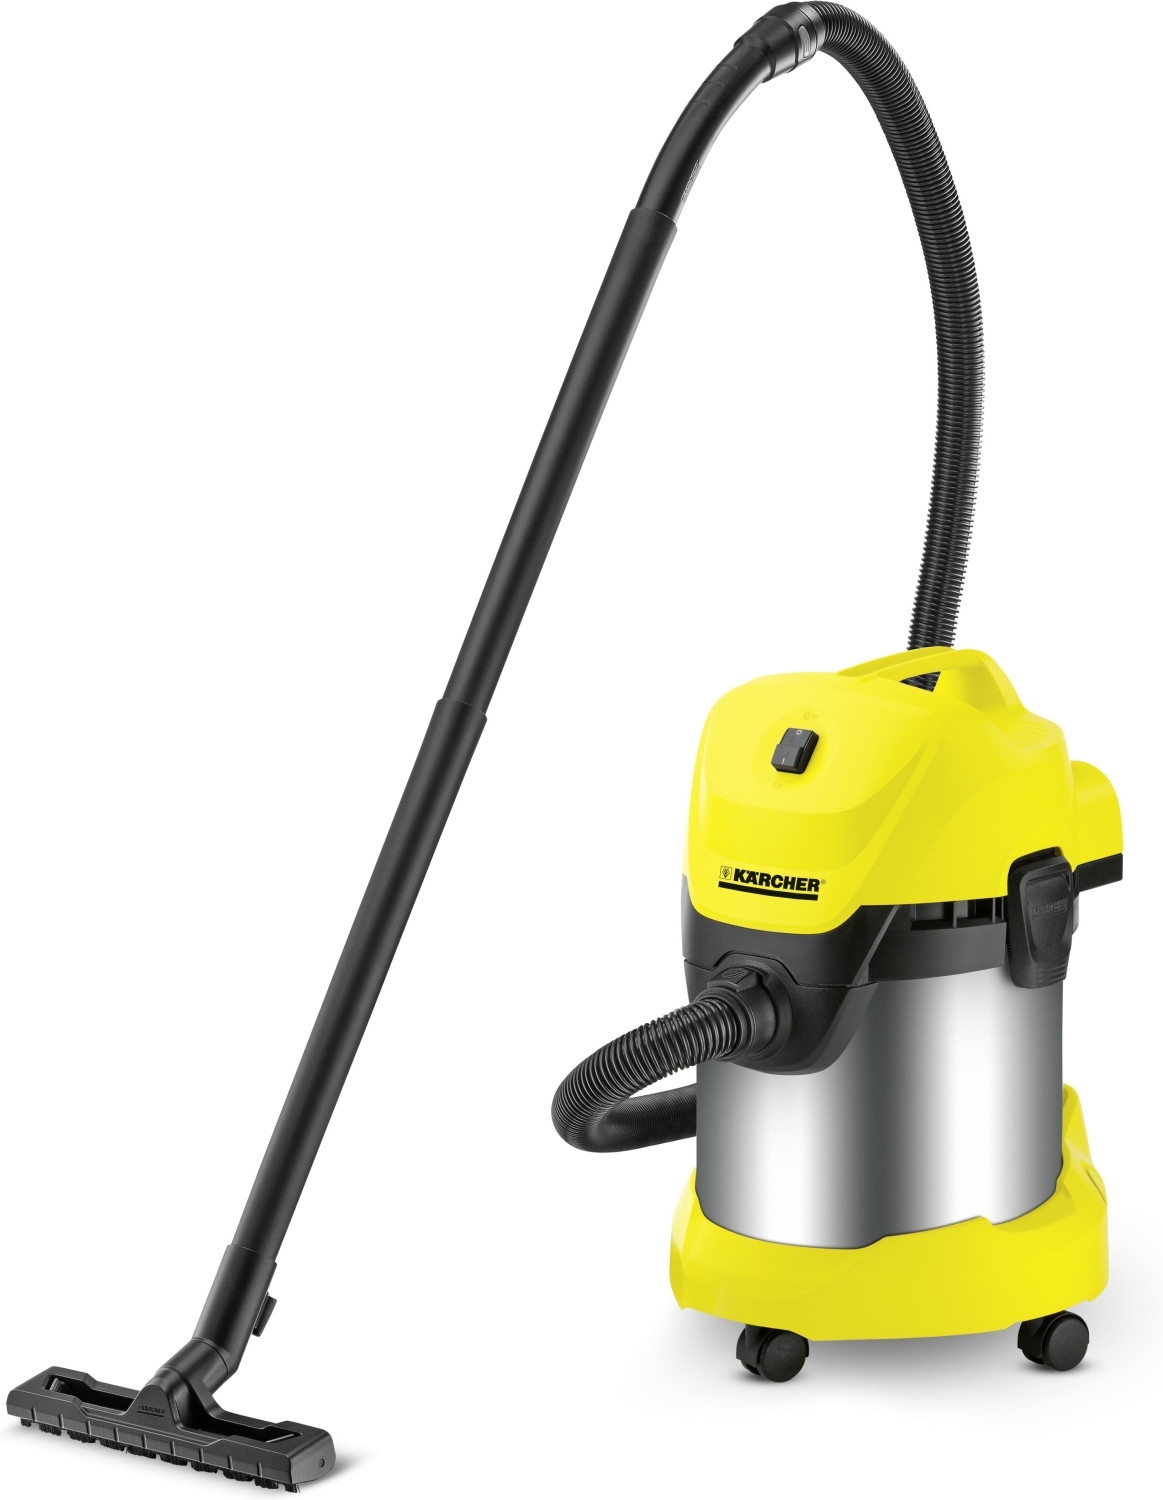 KARCHER-WD3 multi-purpose vacuum cleaner